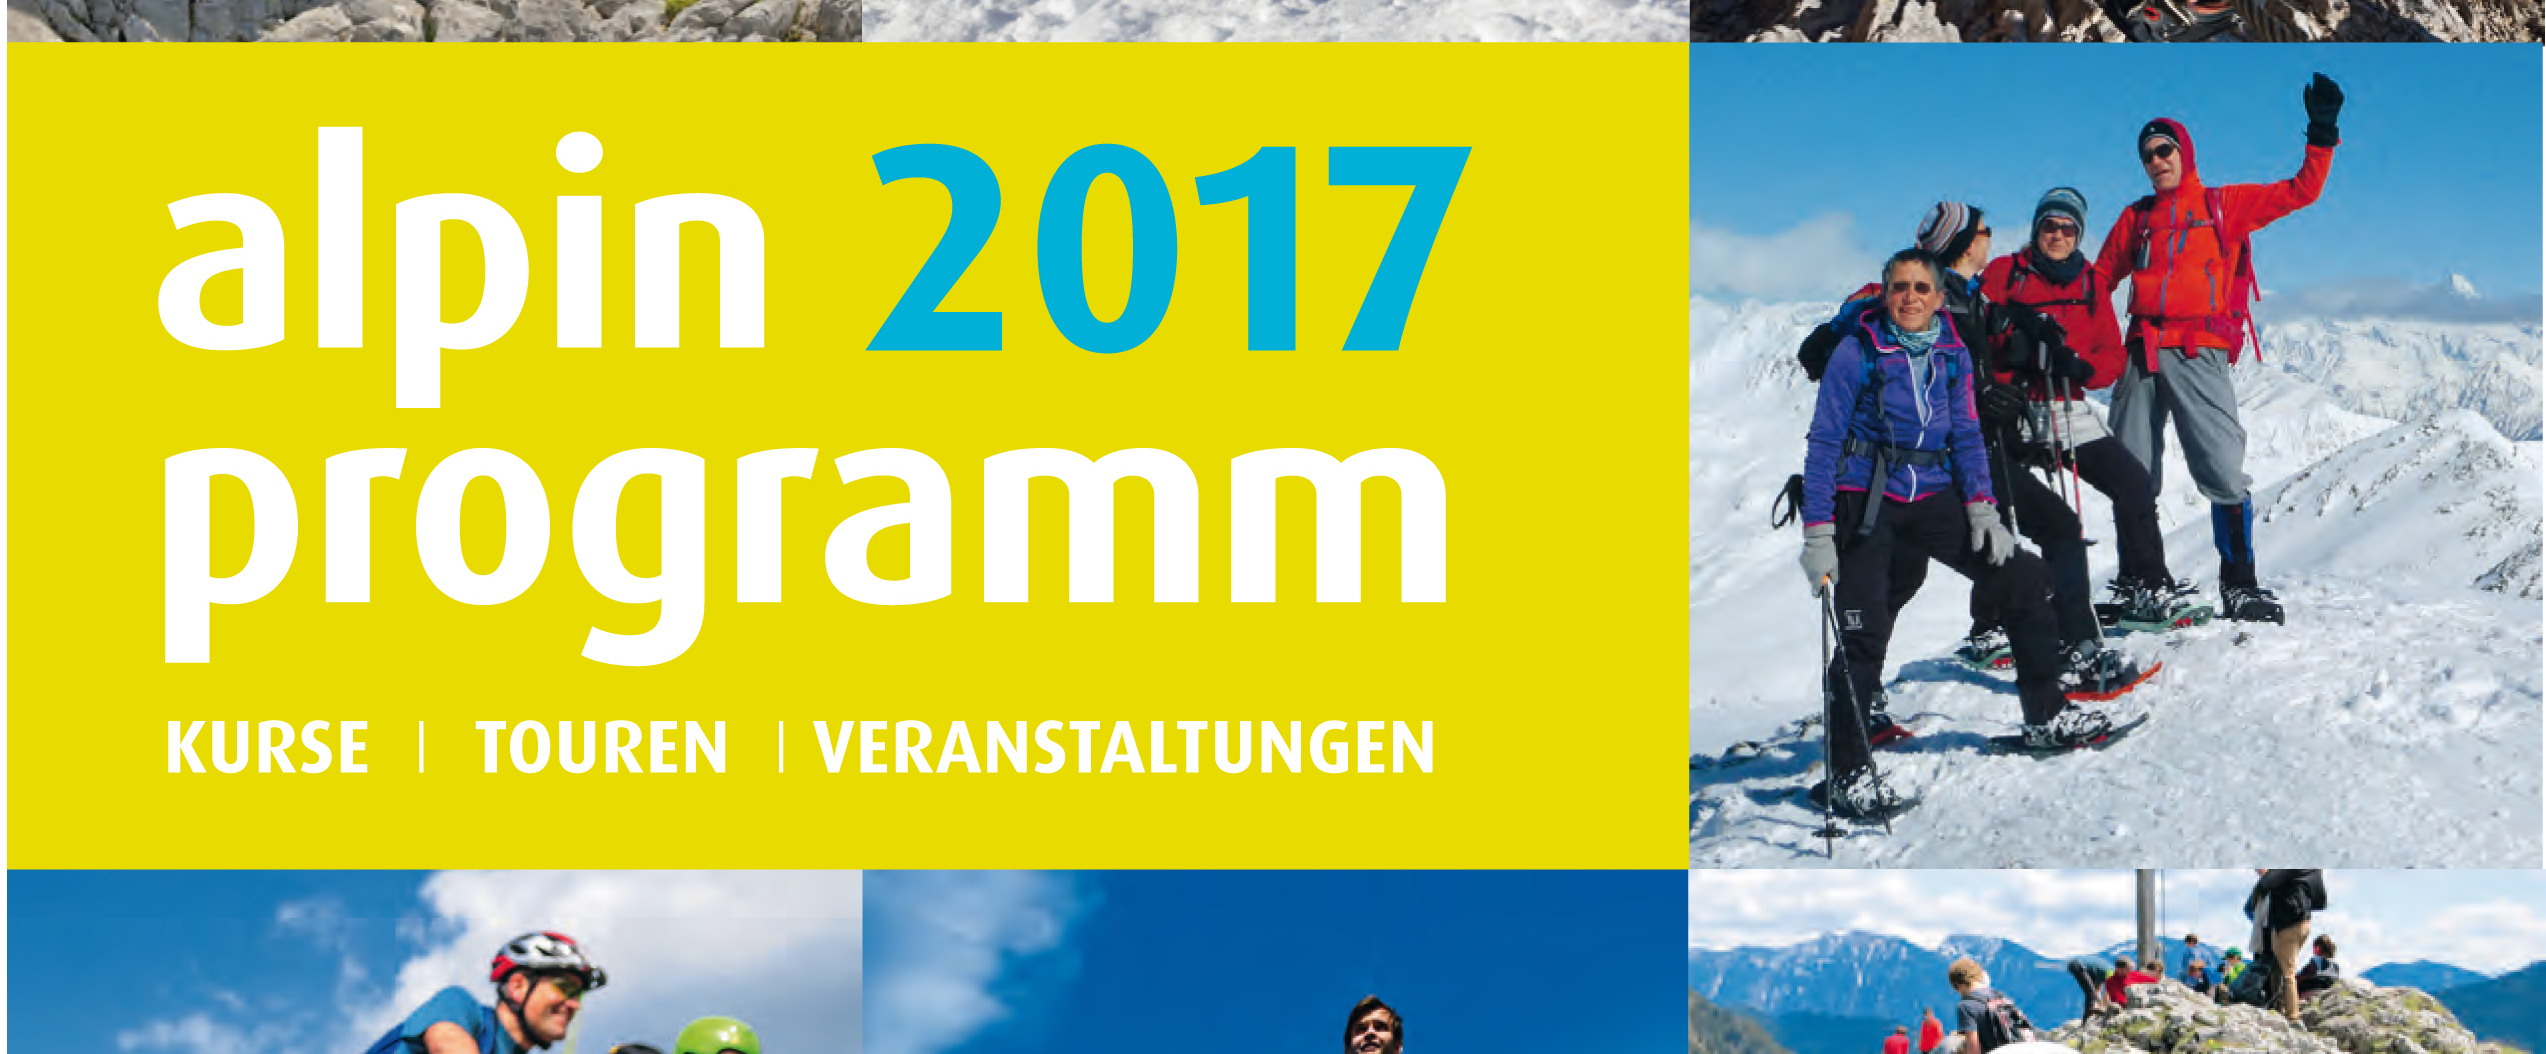 Ausschnitt vom Cover des Katalogs "alpinpogramm 2017 - Kurse, Touren, Veranstaltungen" mit verschiedenen Bildern von Bergsportsituationen.